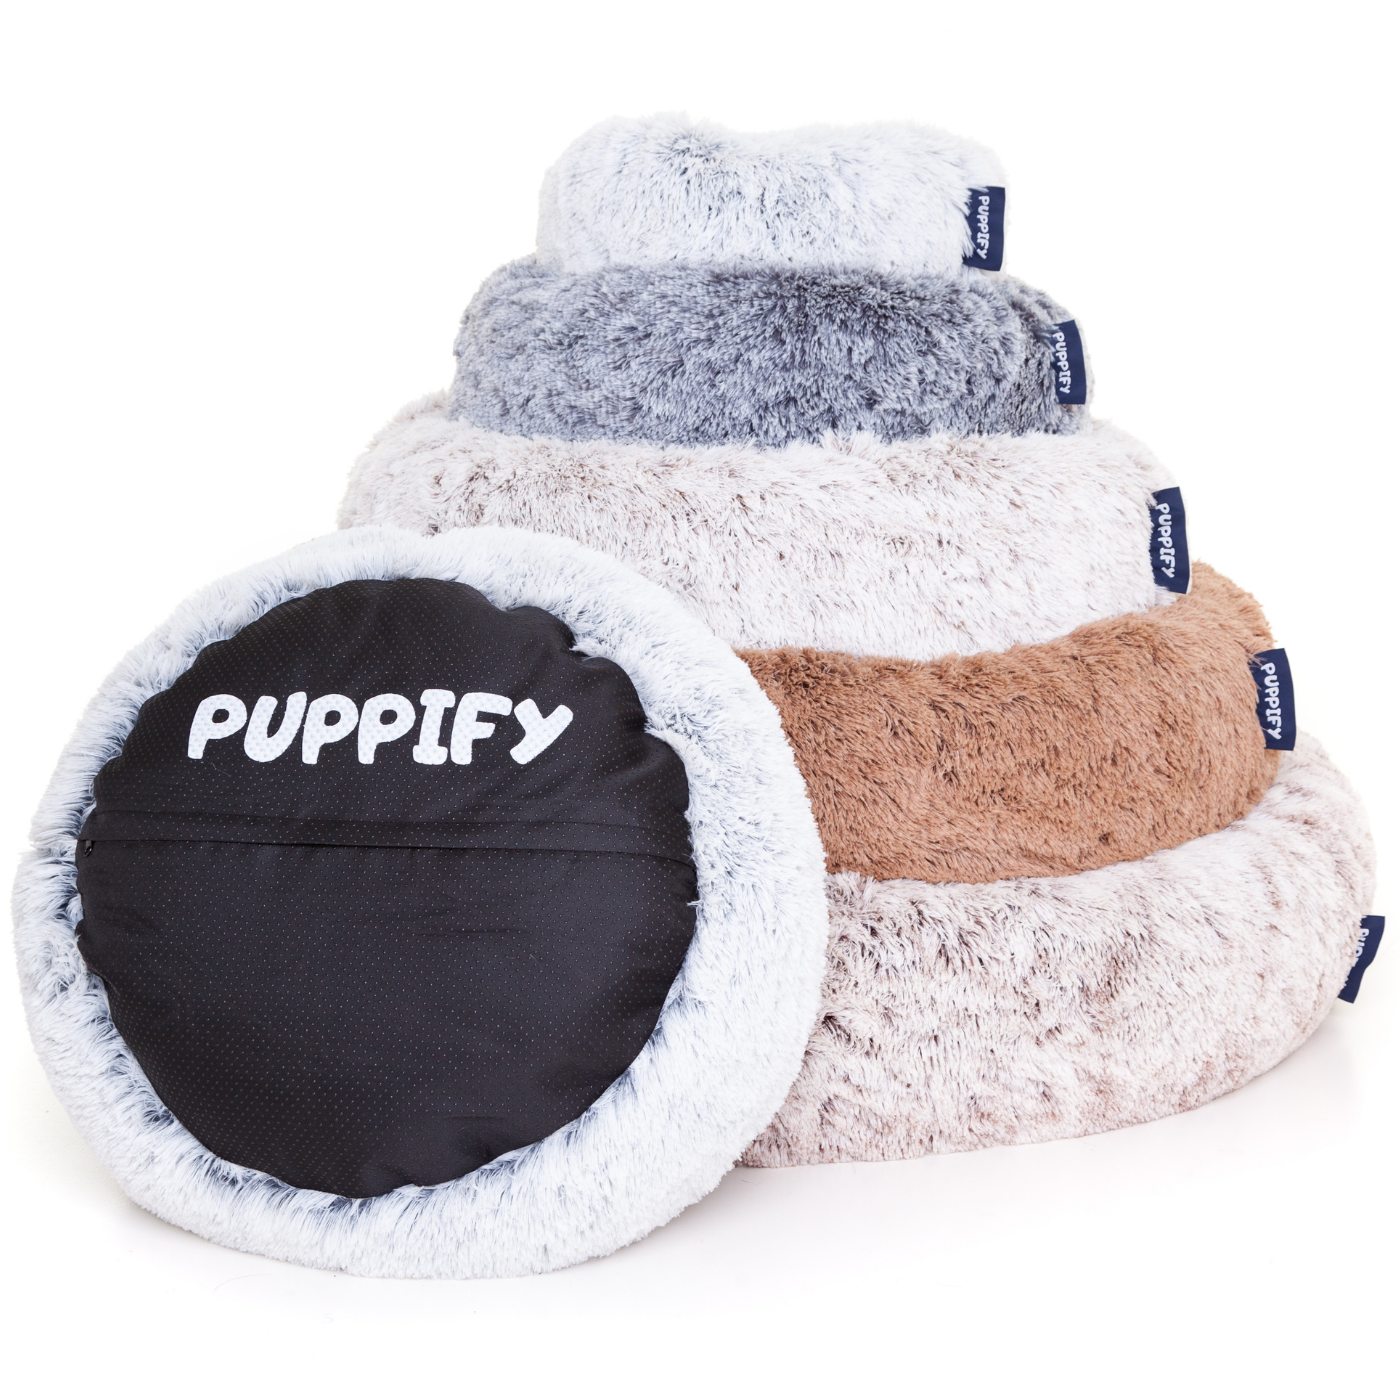 Puppify's premium donut hondenmand met zachte, luxe stoffen voor ultiem comfort.